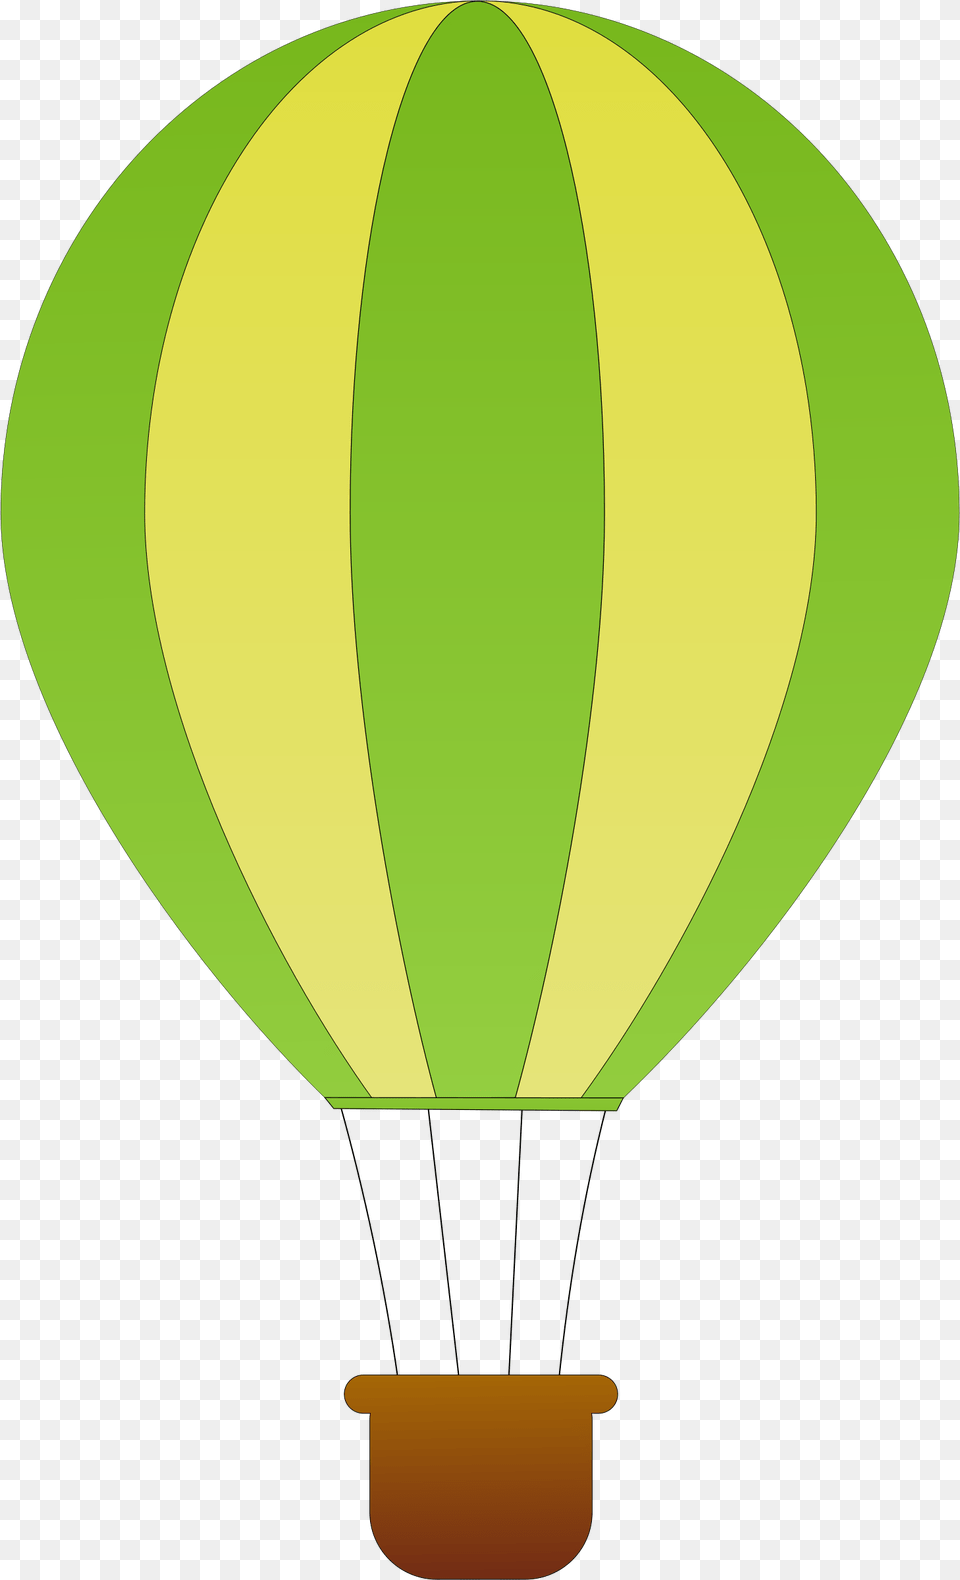 Clipart, Aircraft, Hot Air Balloon, Transportation, Vehicle Png Image